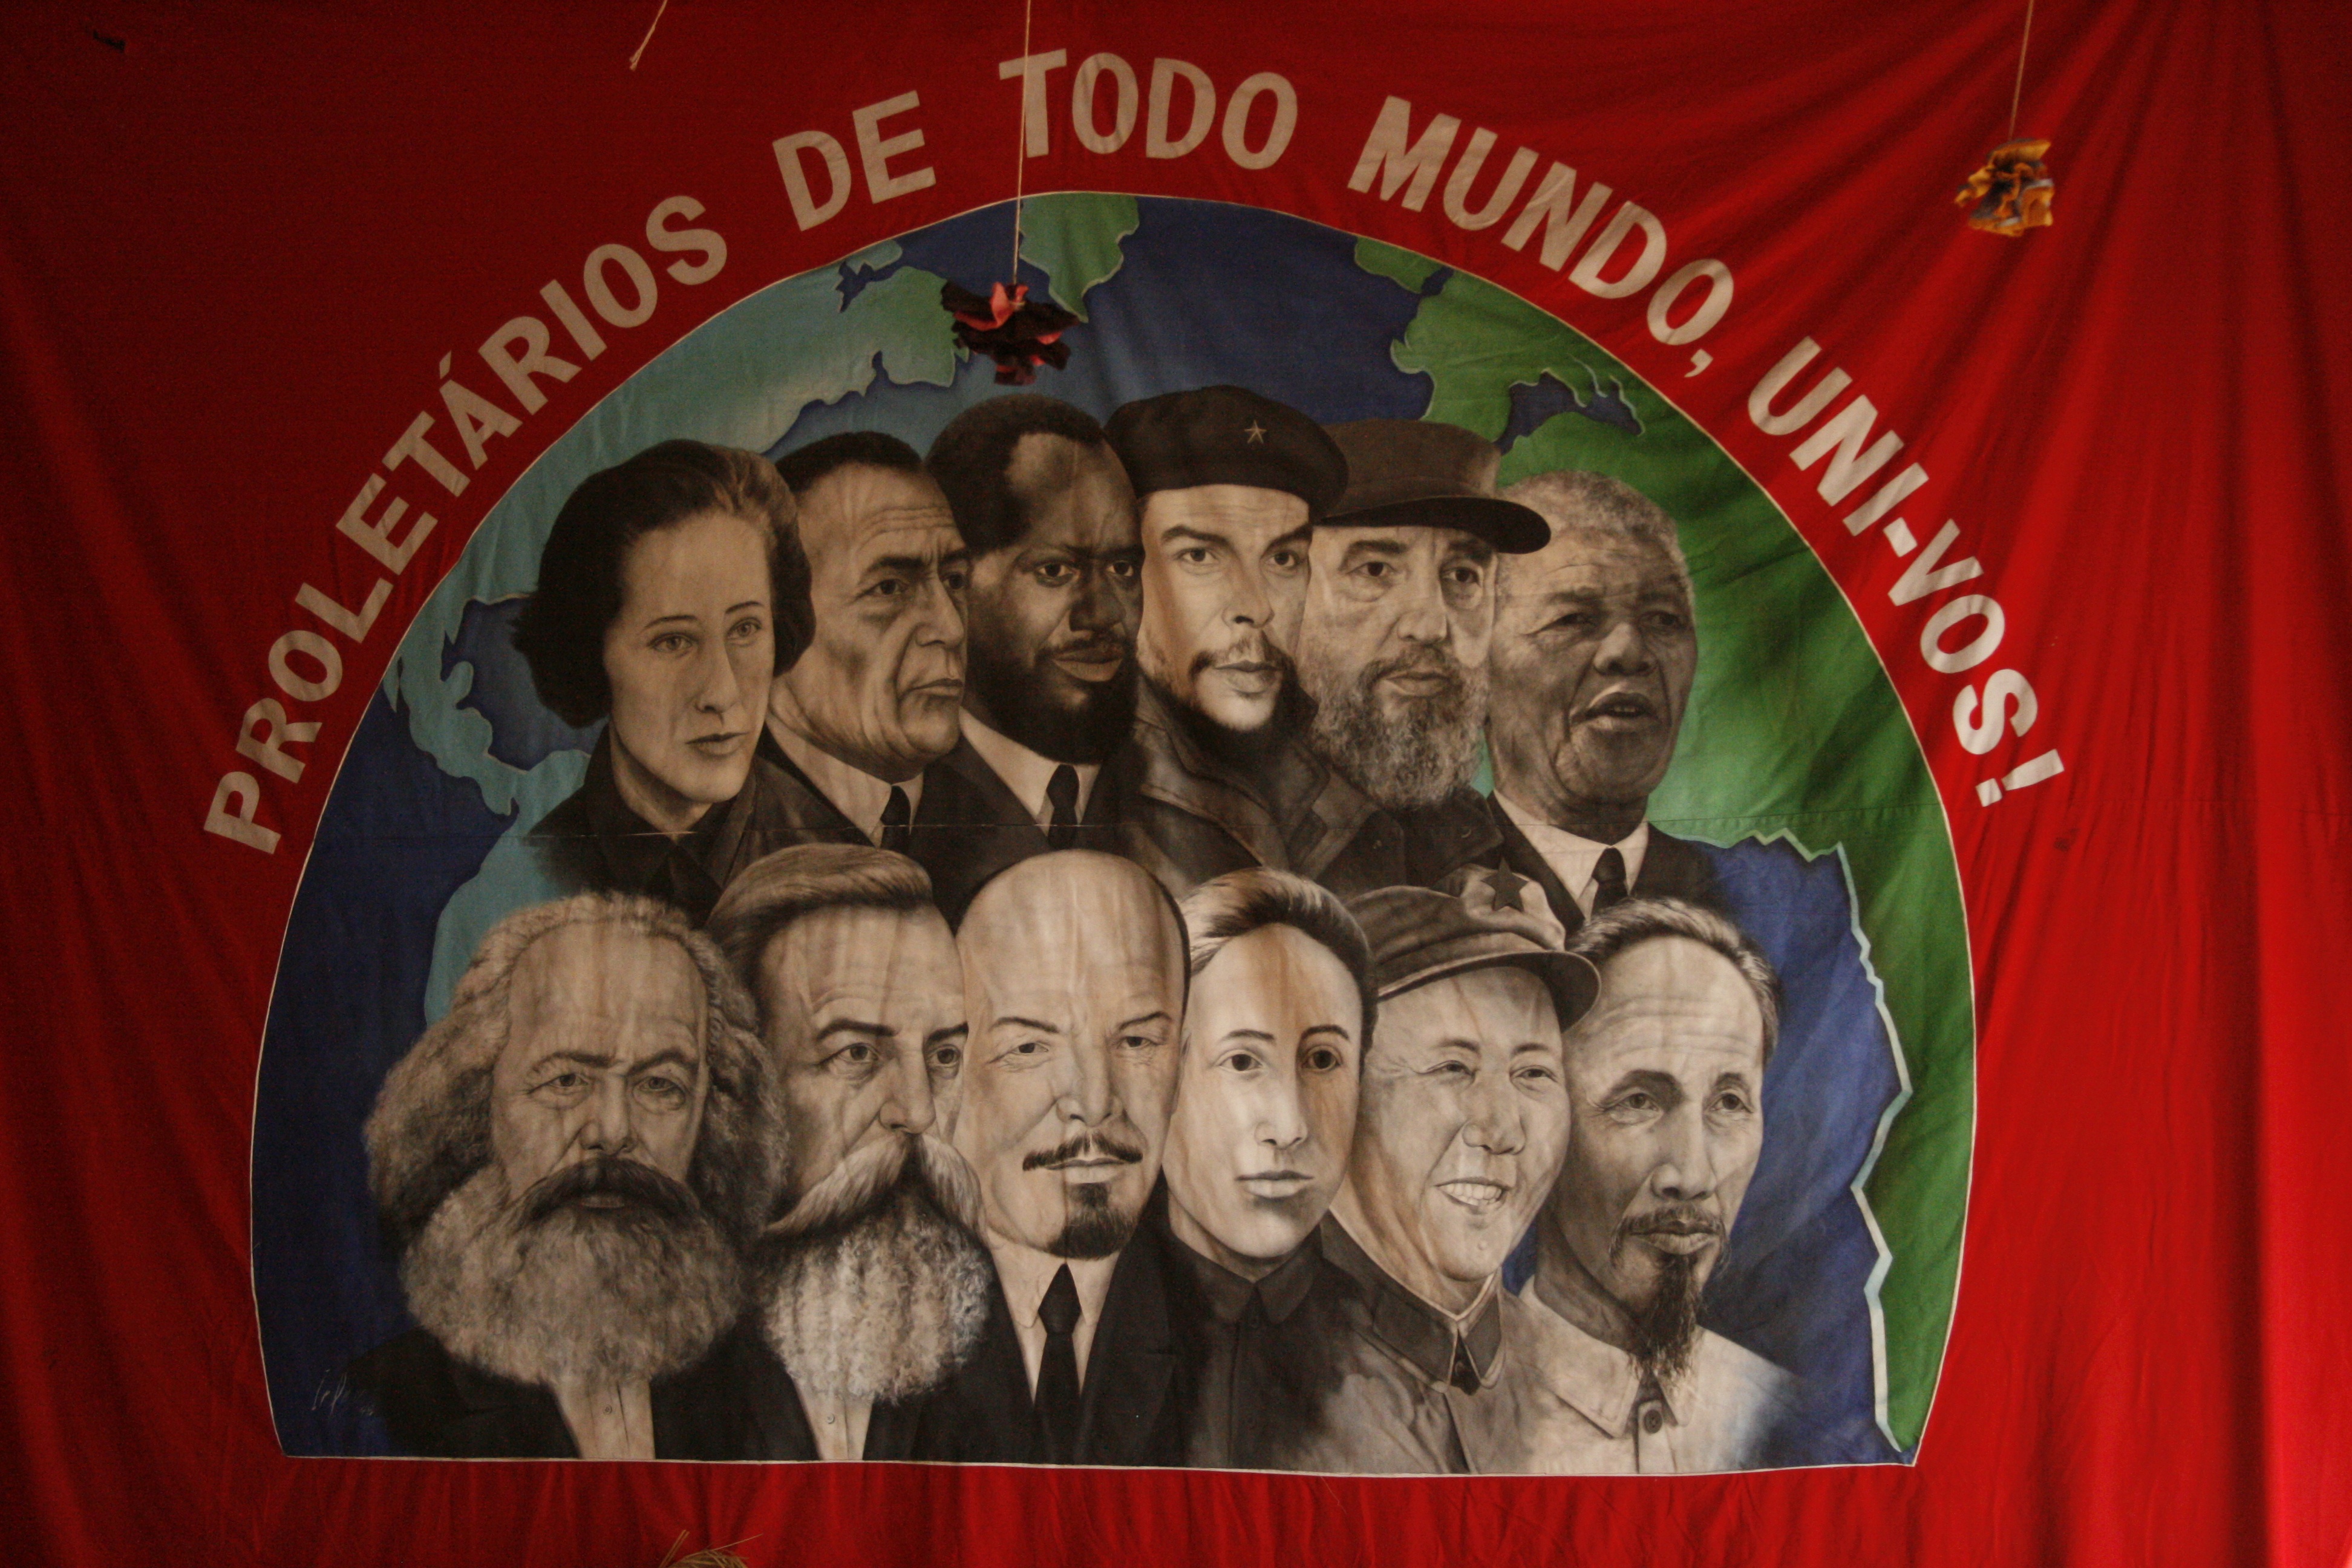 Brazilian Landless Workers' Movement